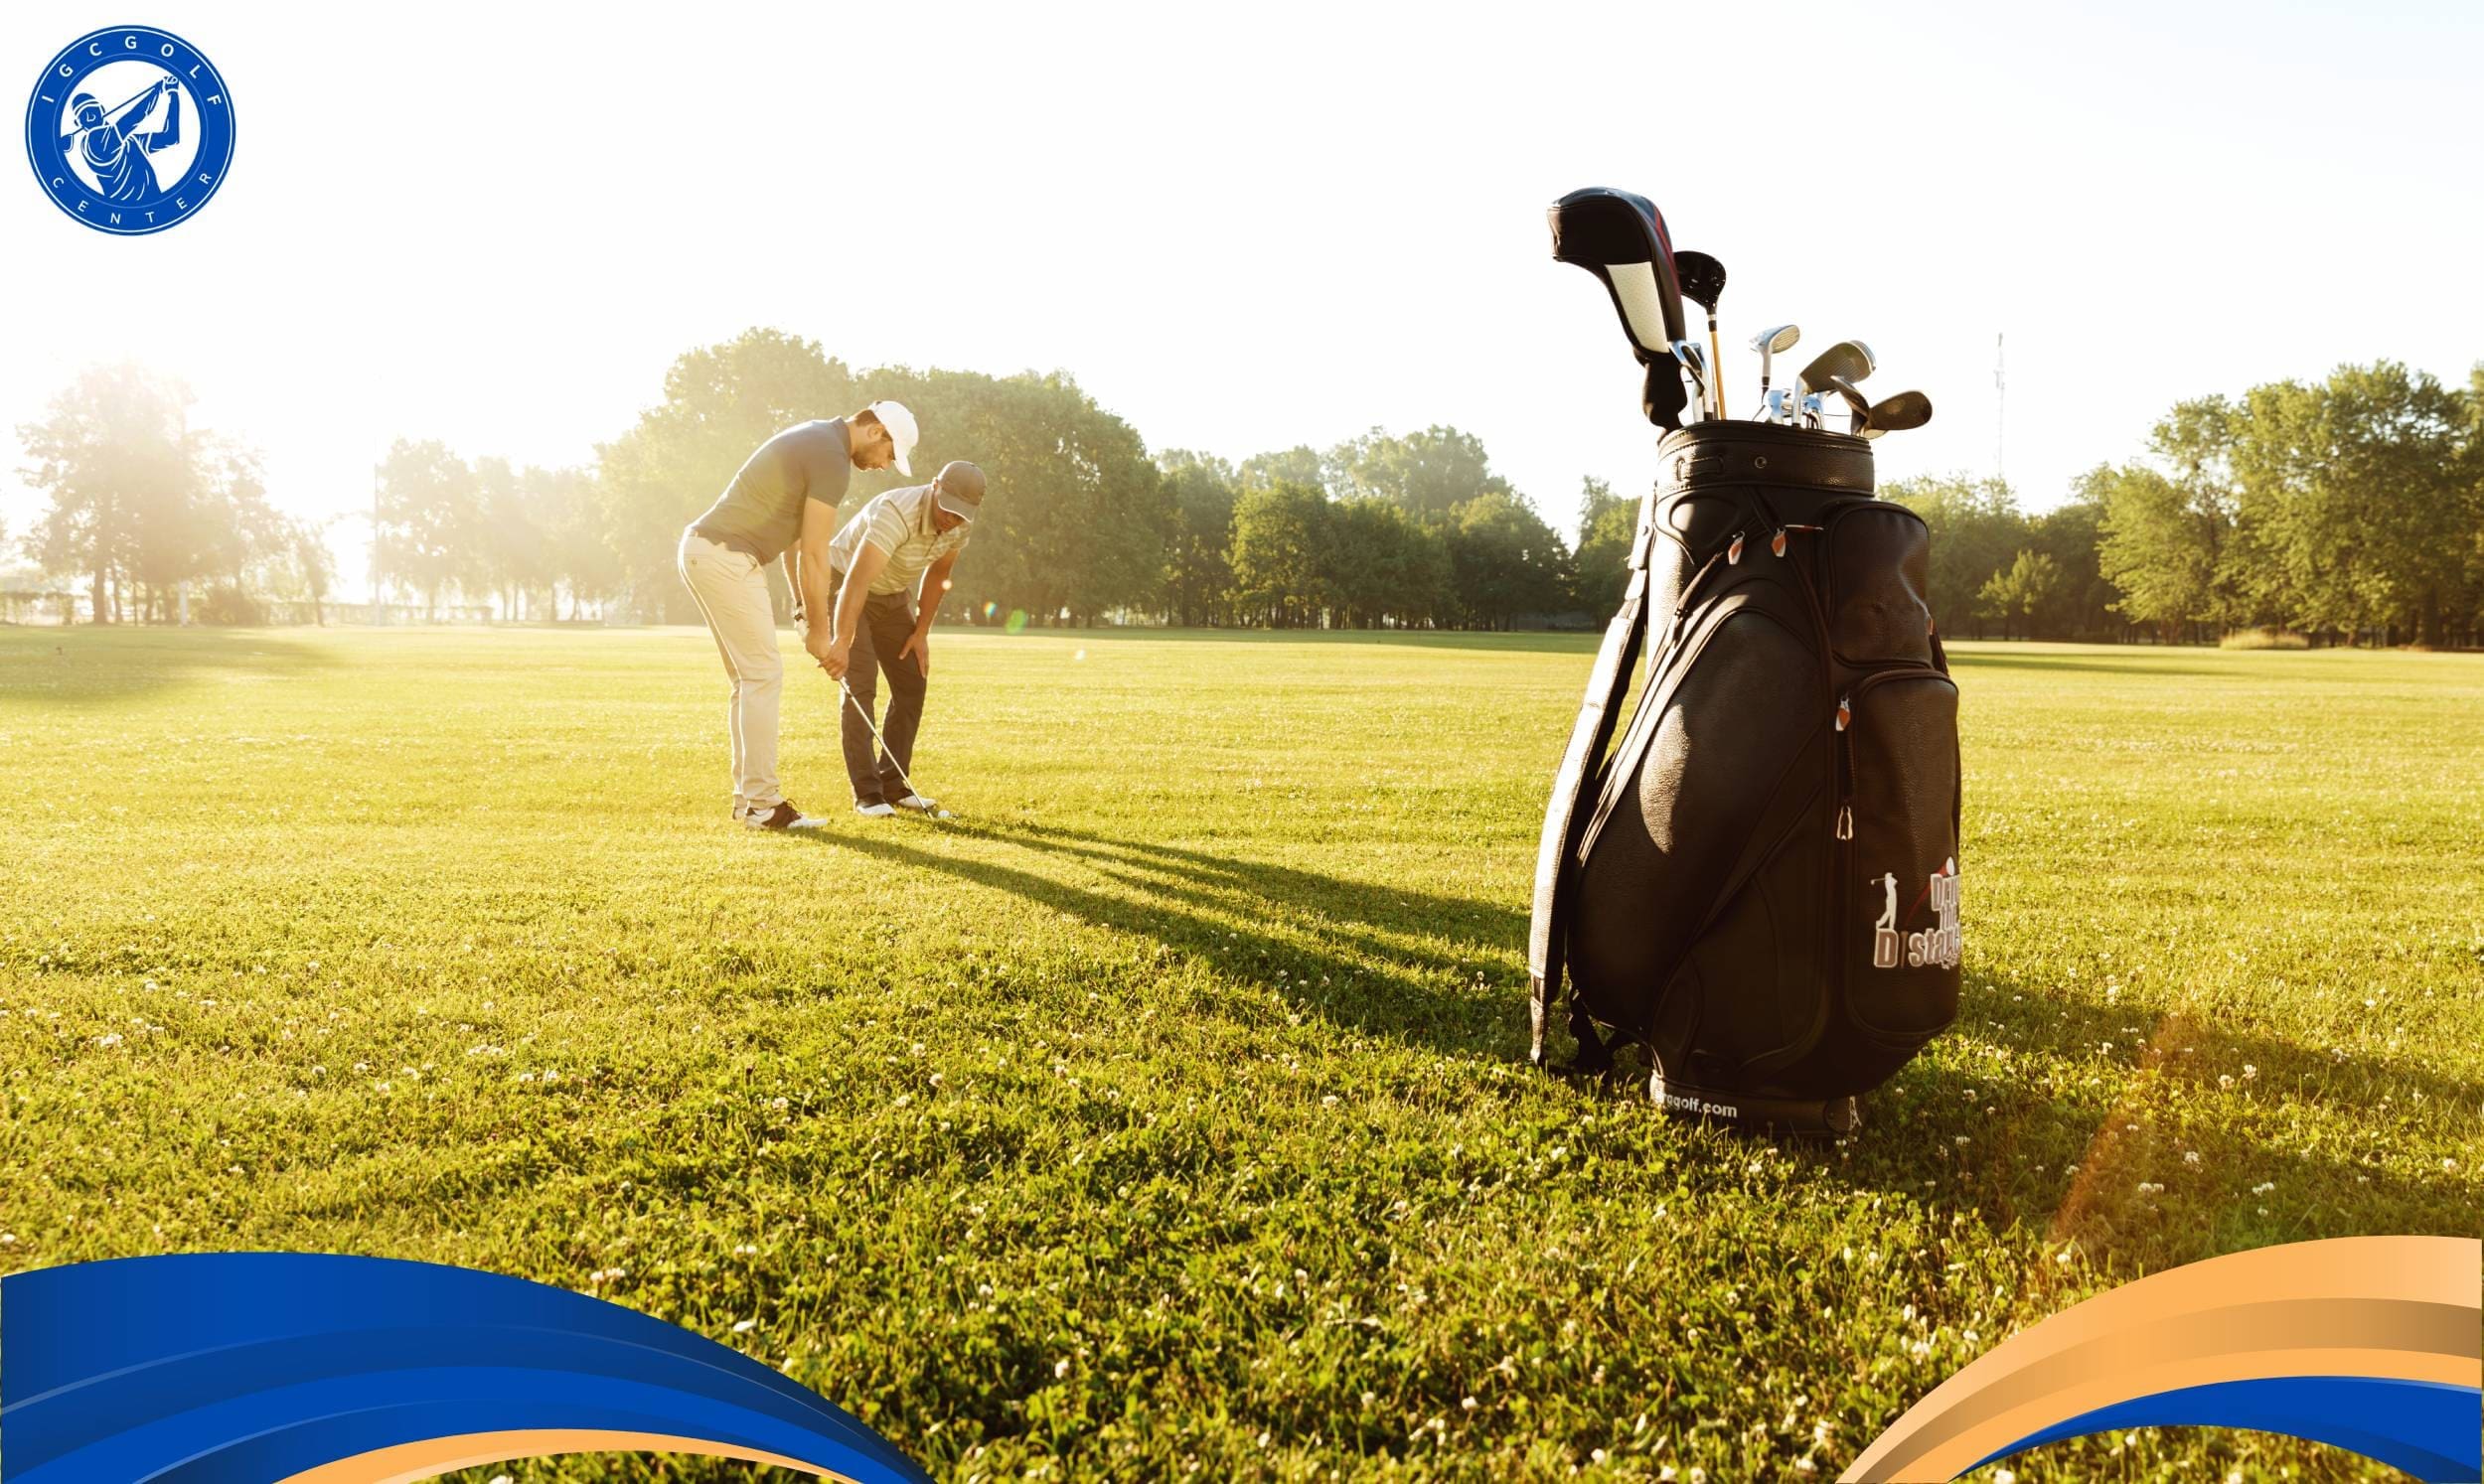 Quy định chọn gậy khi chơi golf